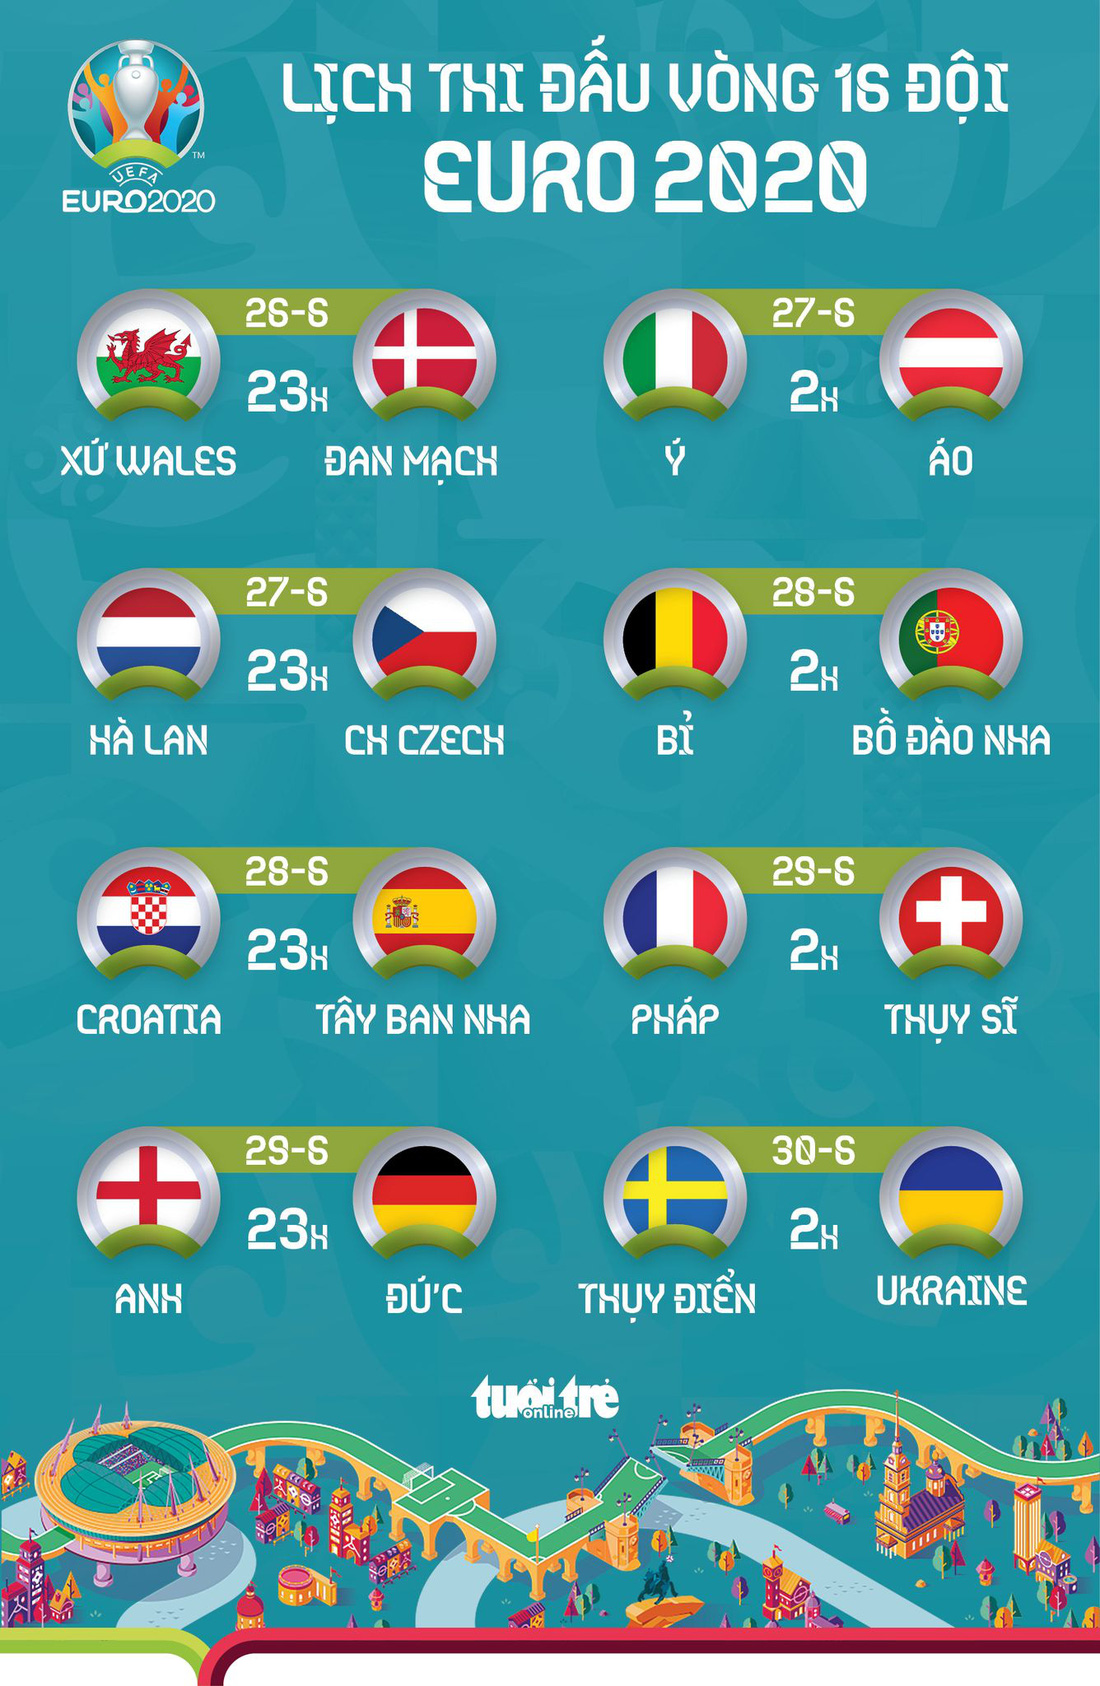 Lịch thi đấu 8 trận vòng 16 đội Euro 2020 - Ảnh 1.